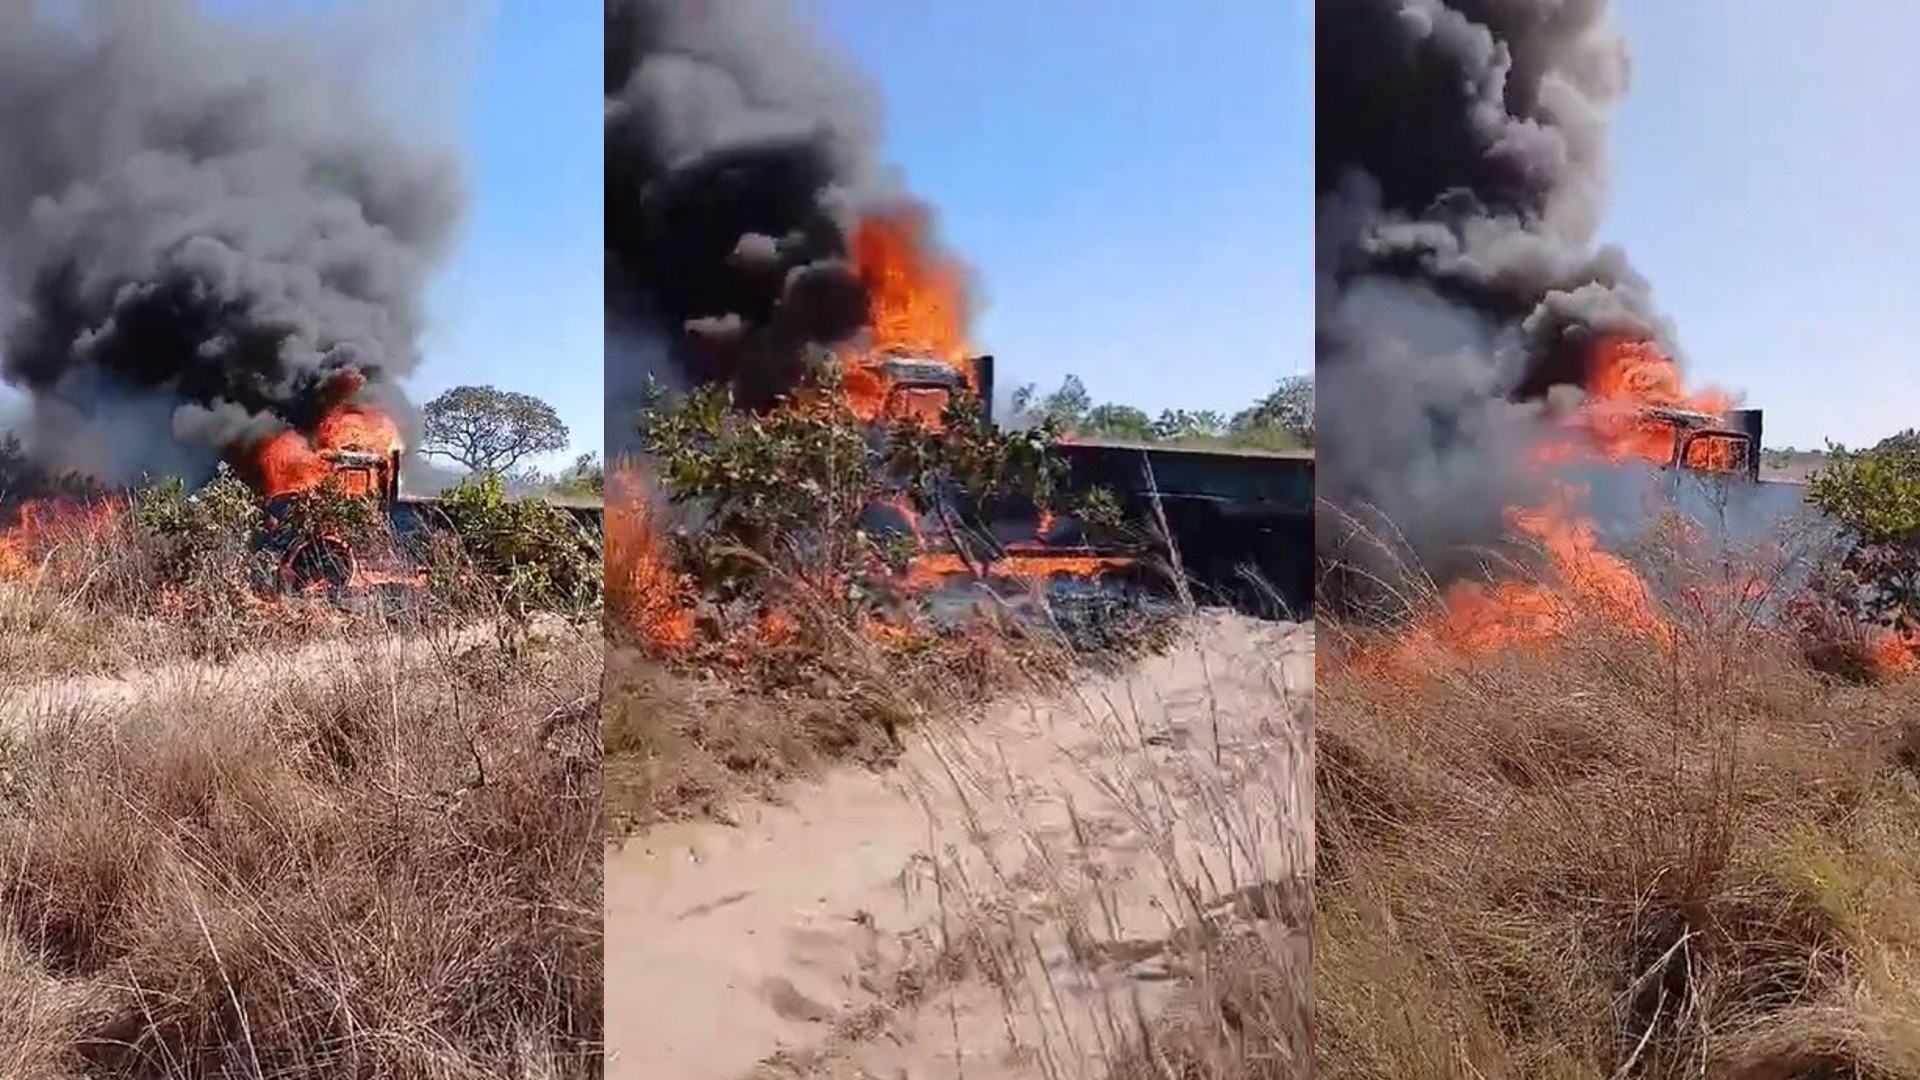 Motorista atola caminhão, força motor e provoca incêndio em área no Pantanal; veja vídeo